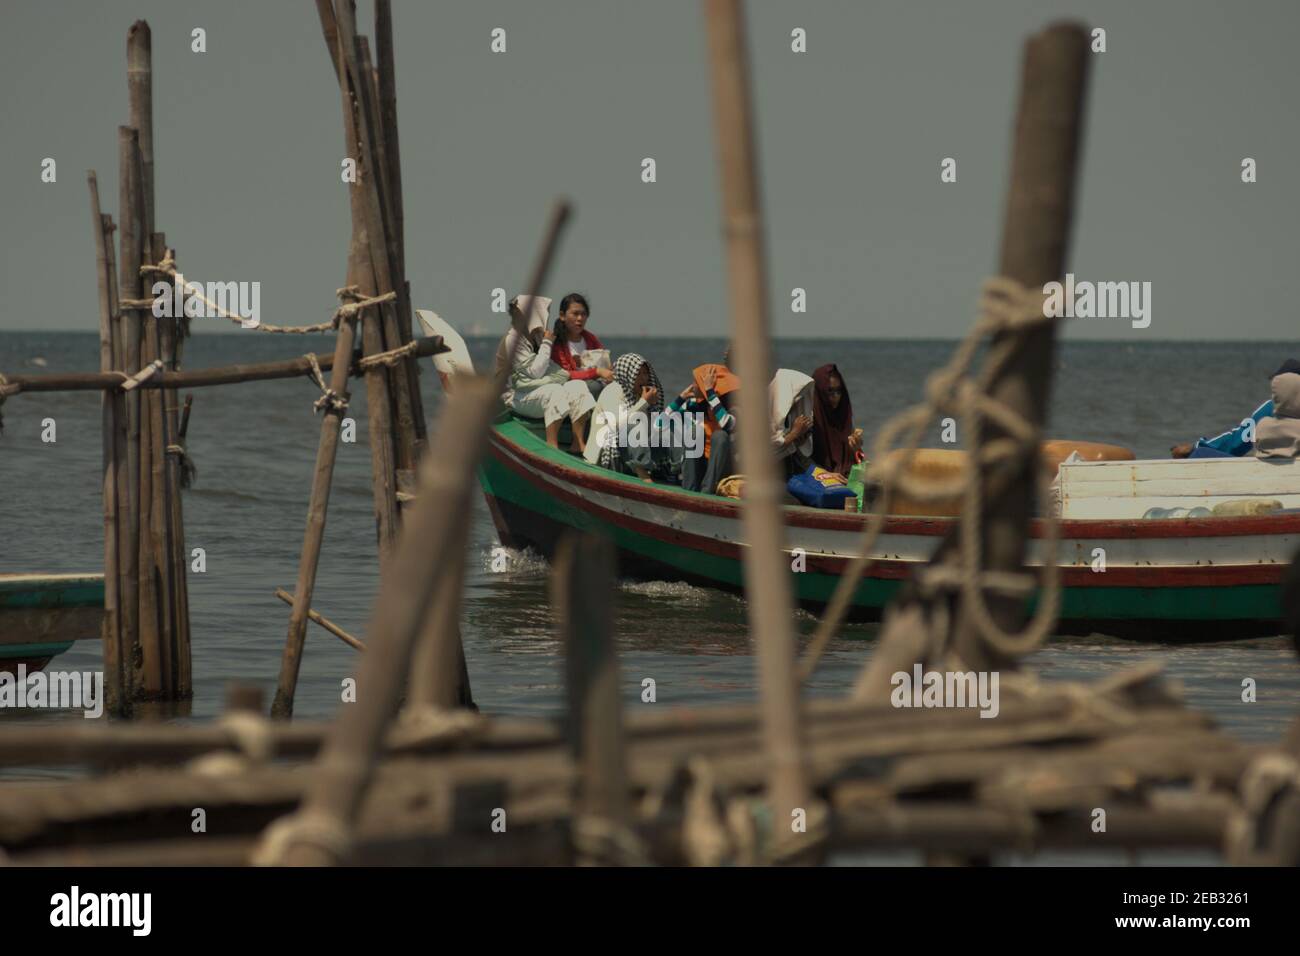 Touristes nationaux à bord d'un bateau de pêche au départ du village de Kamal Muara, dans la zone côtière de Jakarta, en Indonésie ; en direction des îles de Seribu, dans la baie de Jakarta, pour les loisirs. Banque D'Images